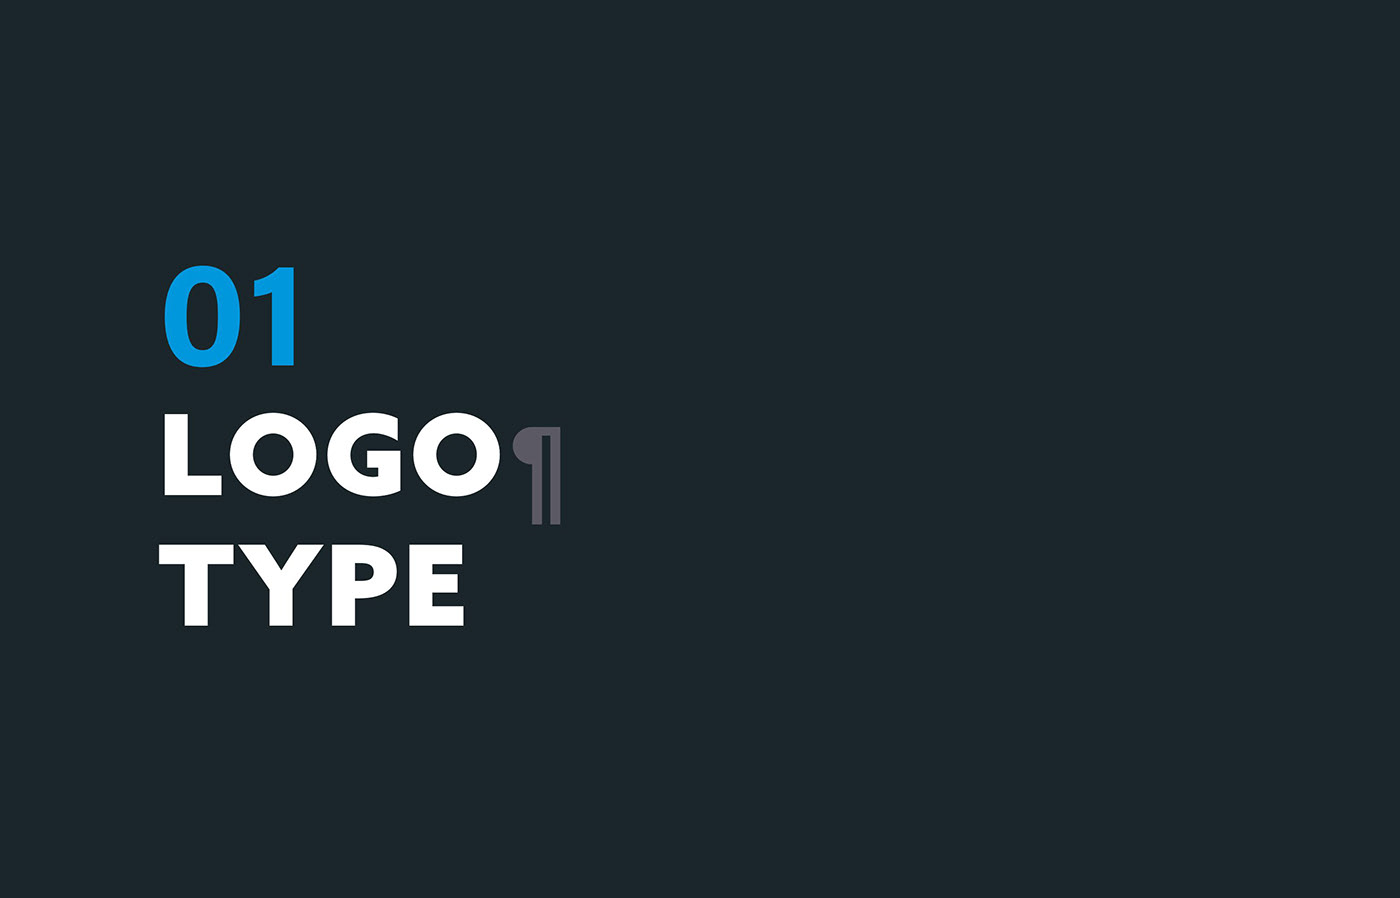 Brand Design brand identity branding  logo Logo Design Logotype typography   visual identity